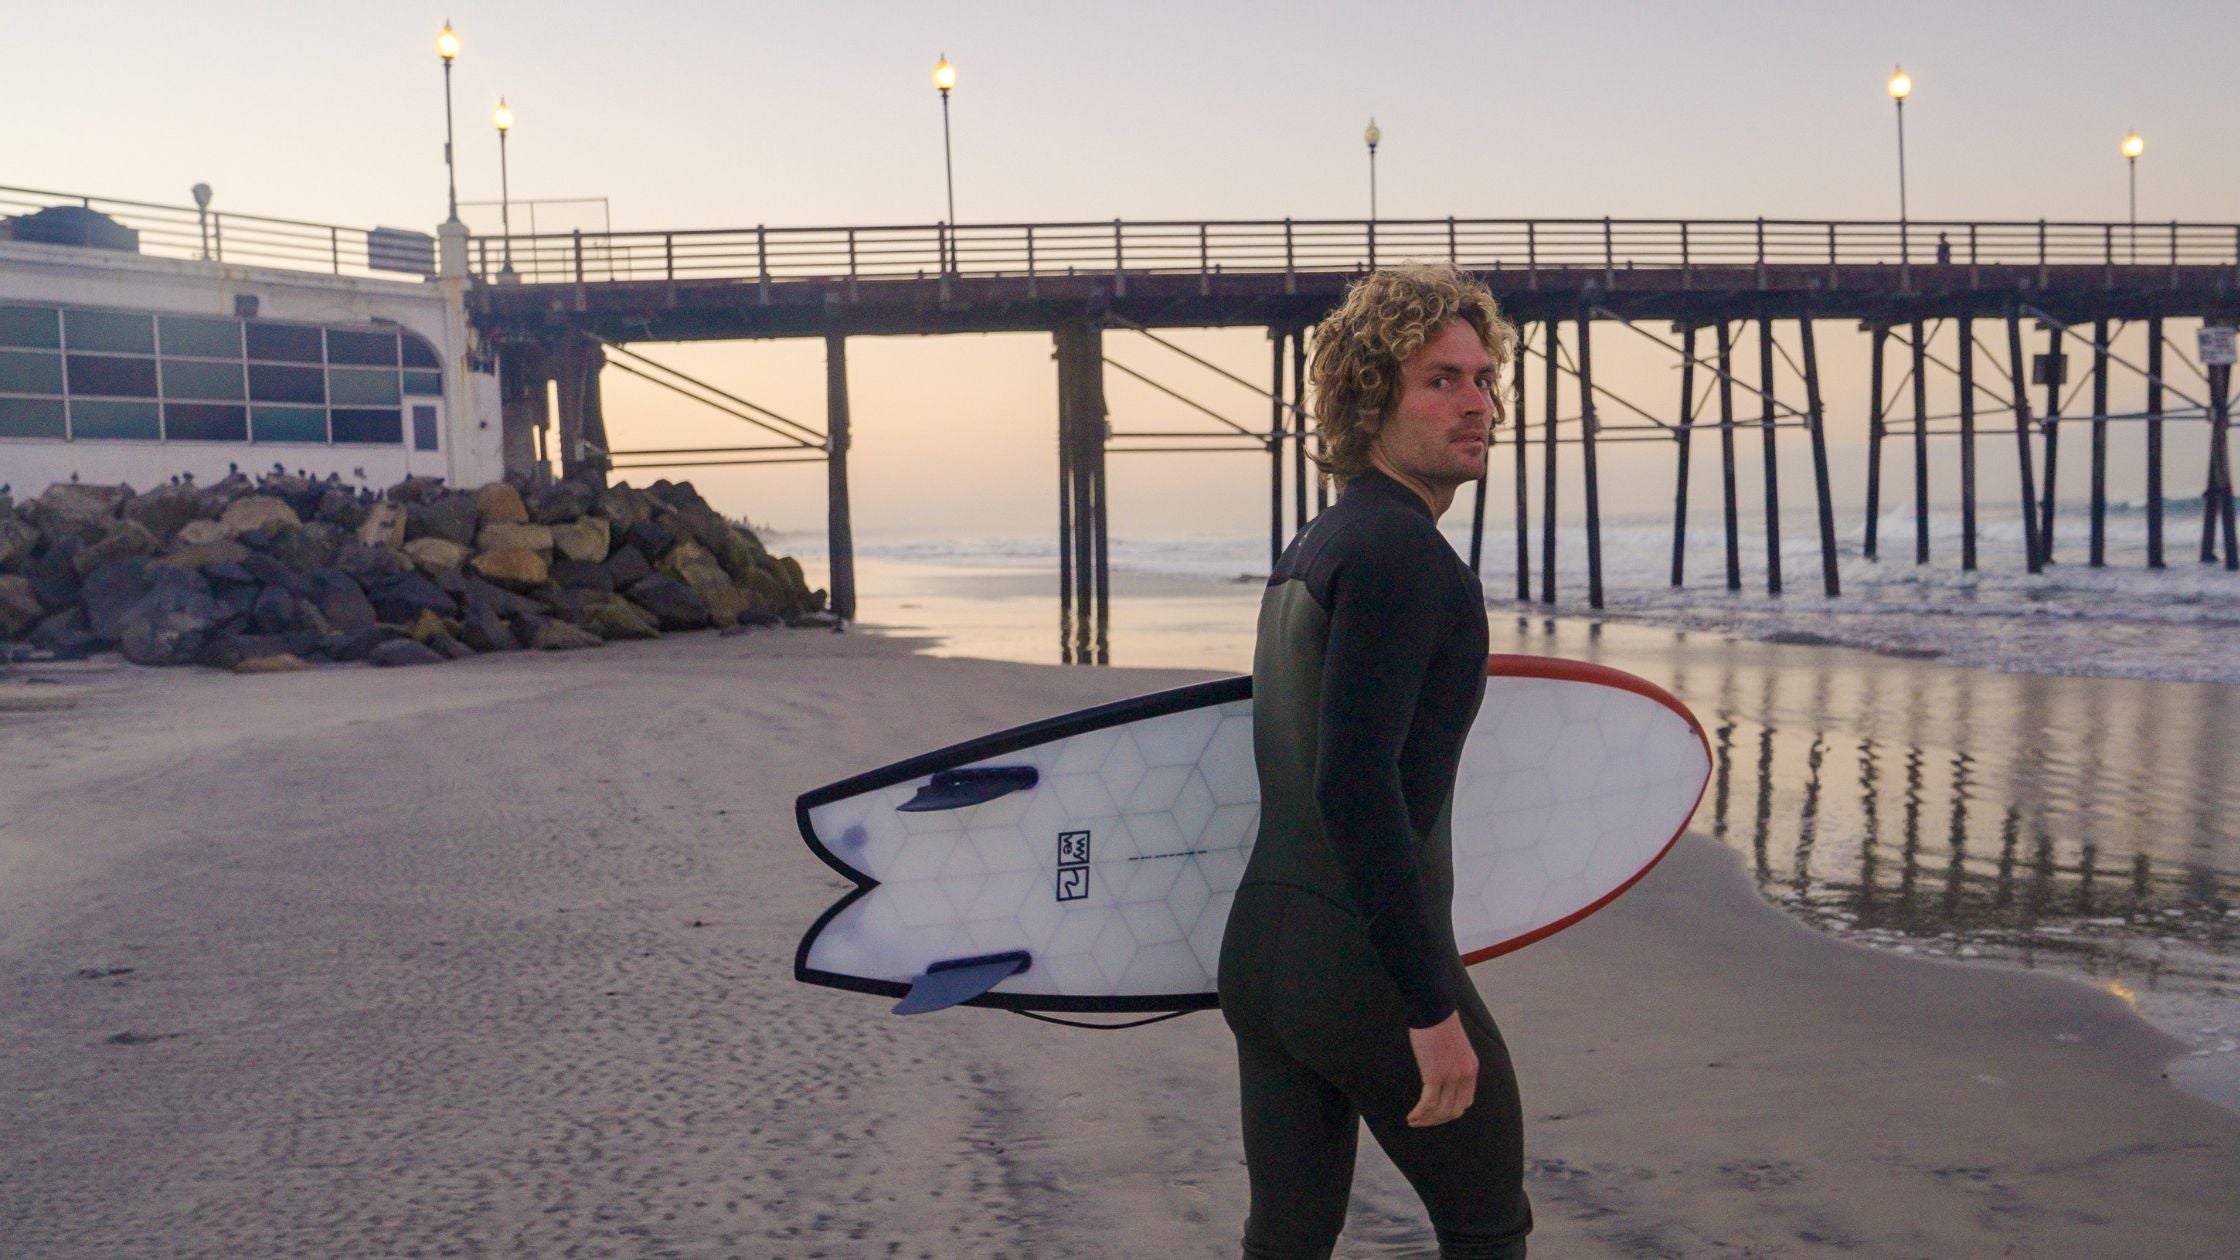 Planche de surf Fish - Planche de surf écologique -  Wyve surfboard in California